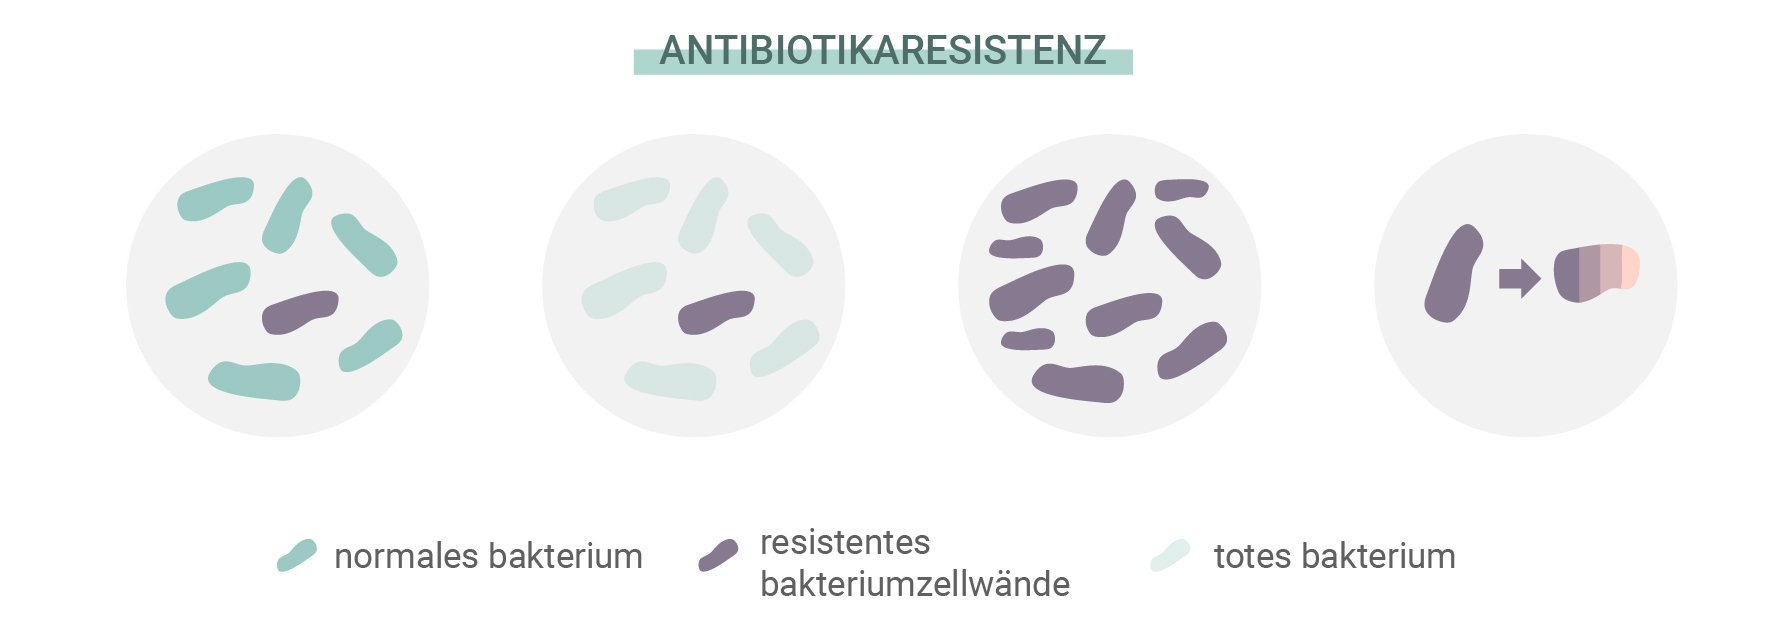 Was ist eine Antibiotikaresistenz?